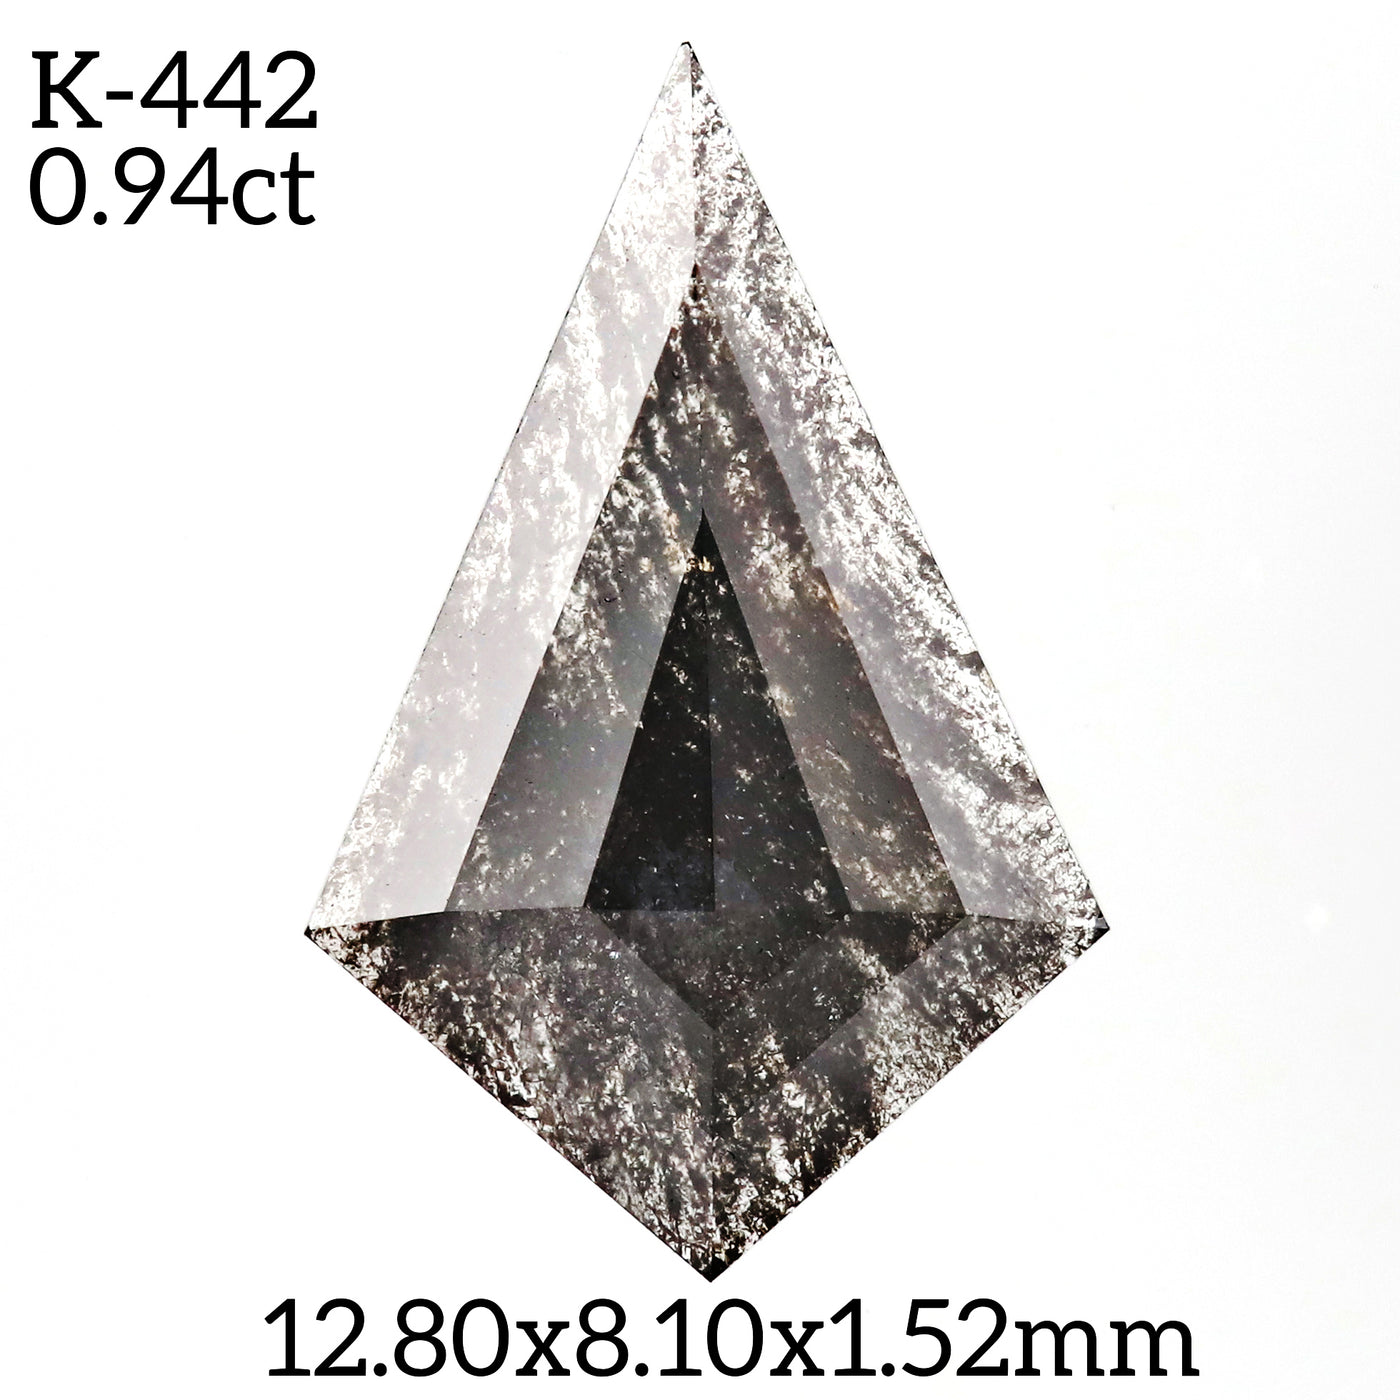 K442 - Salt and pepper kite diamond